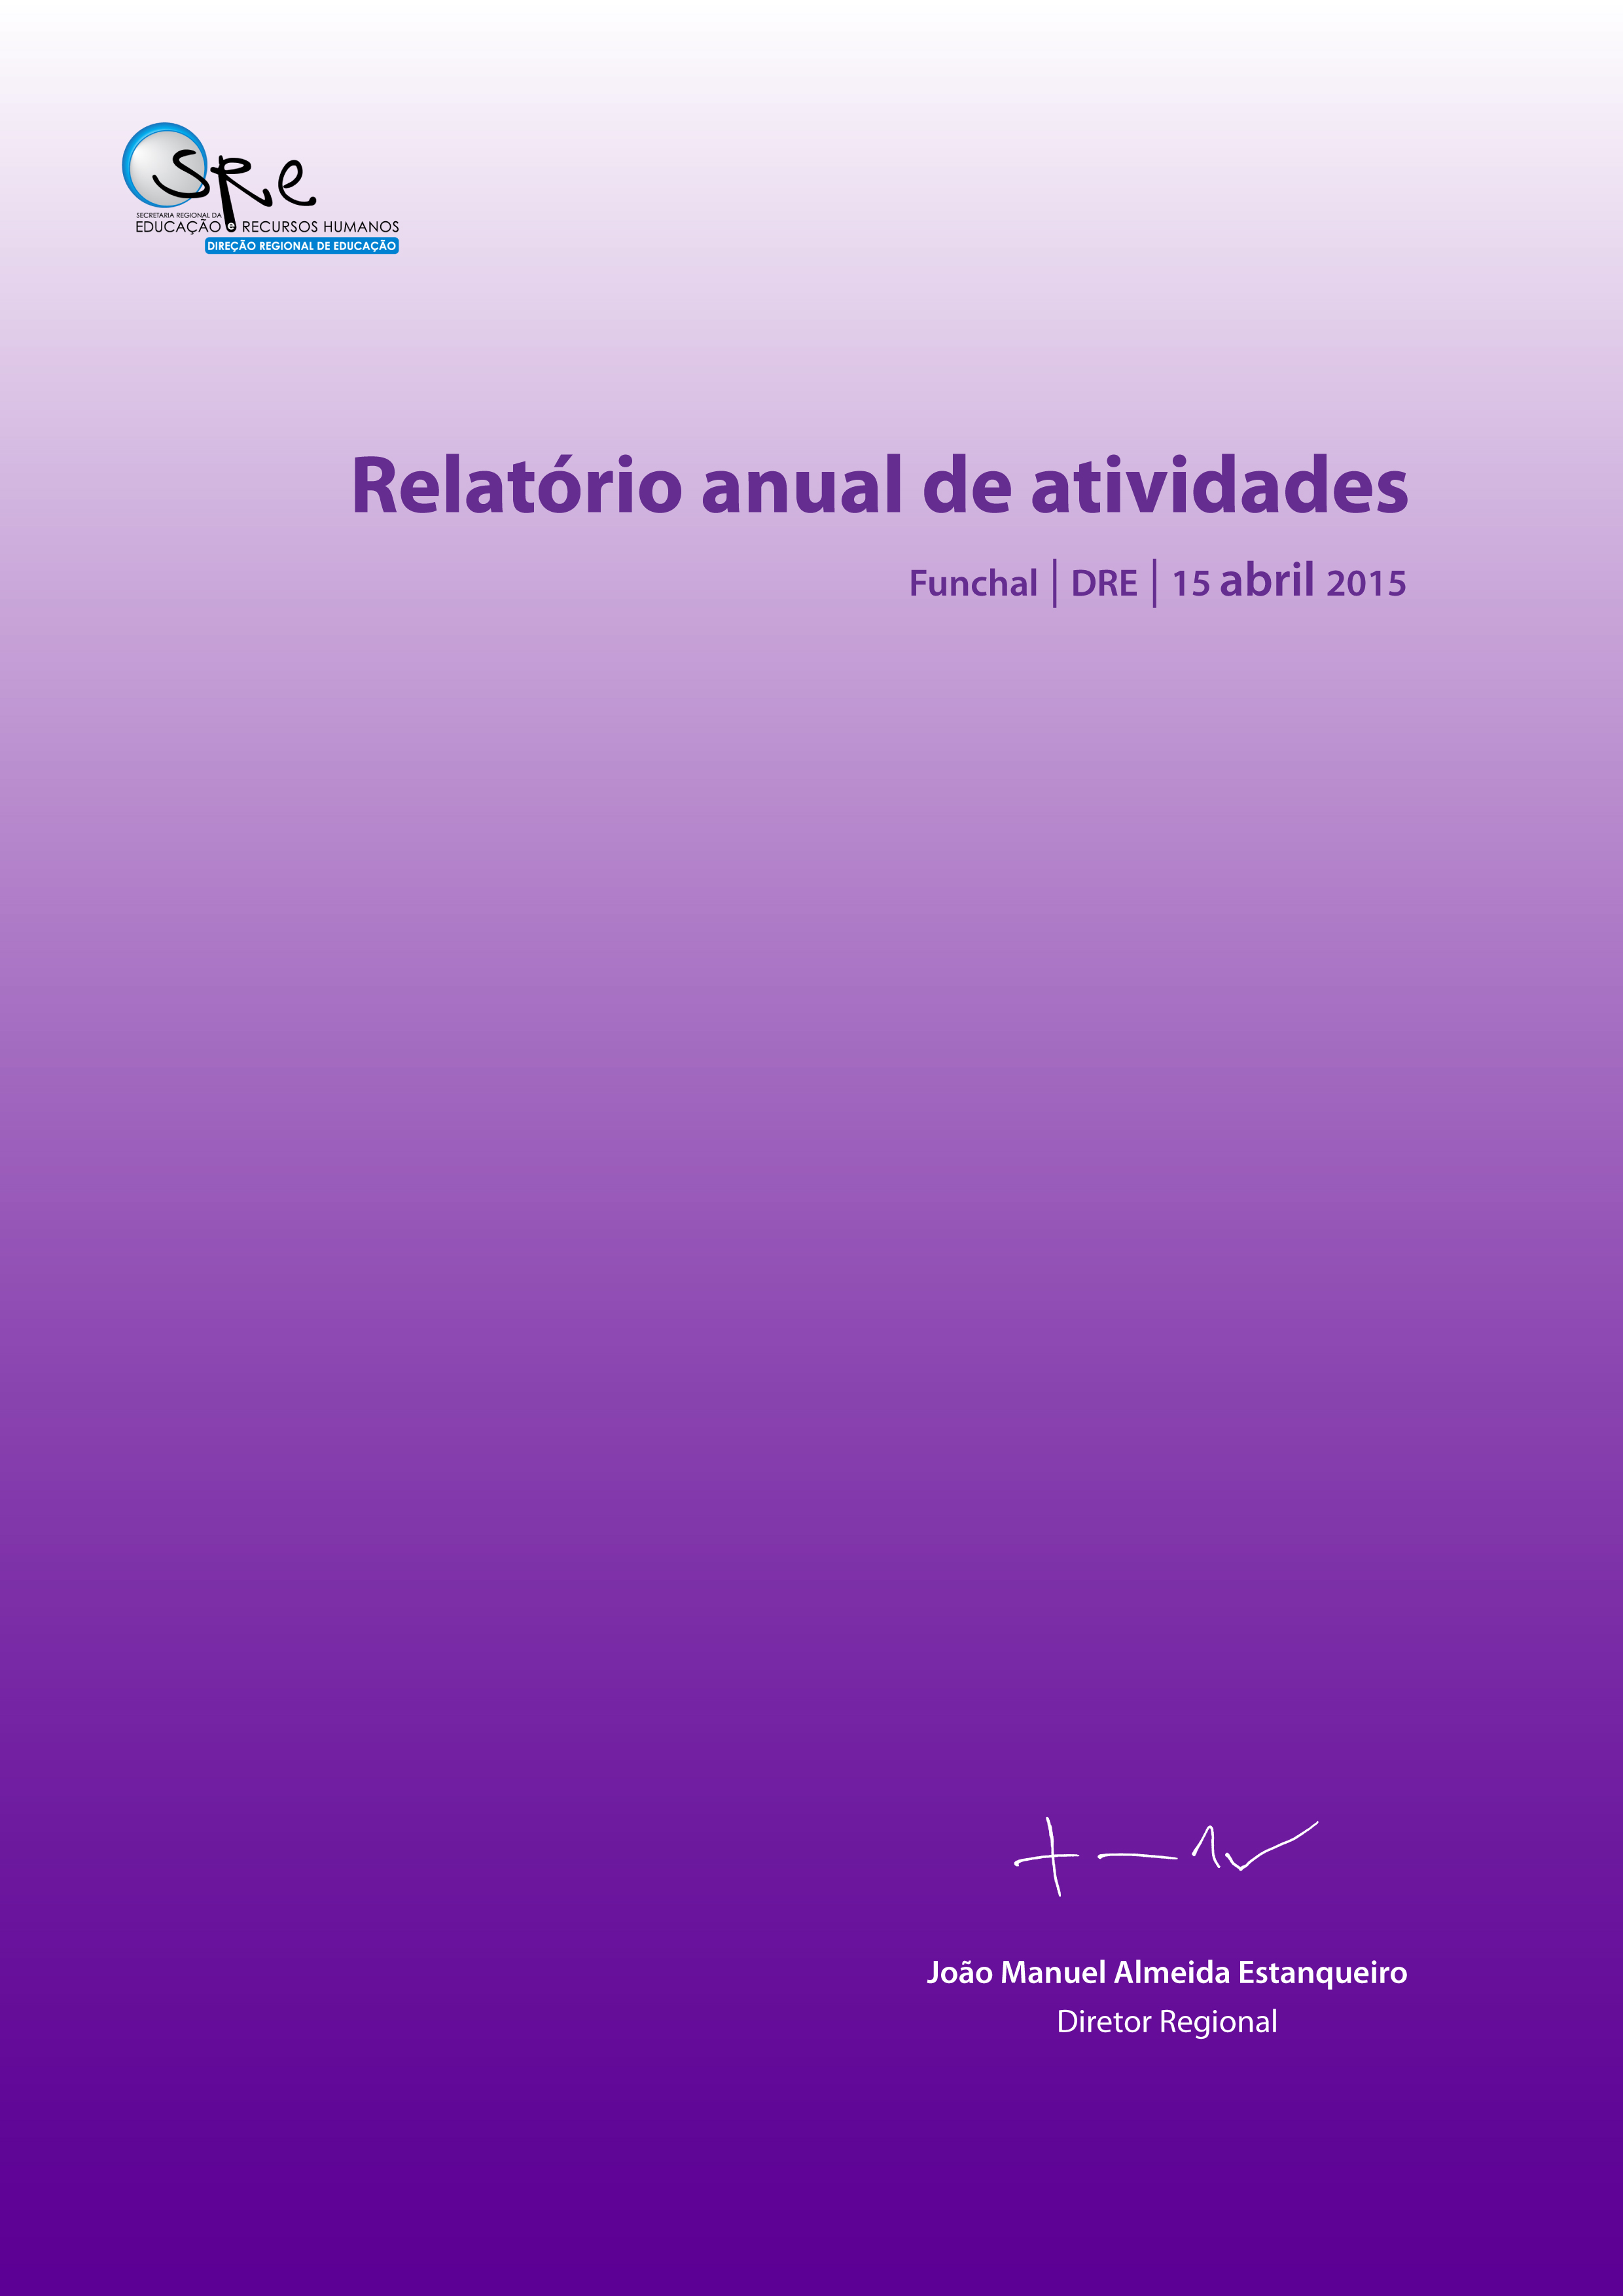 Relatório anual de atividades 2014